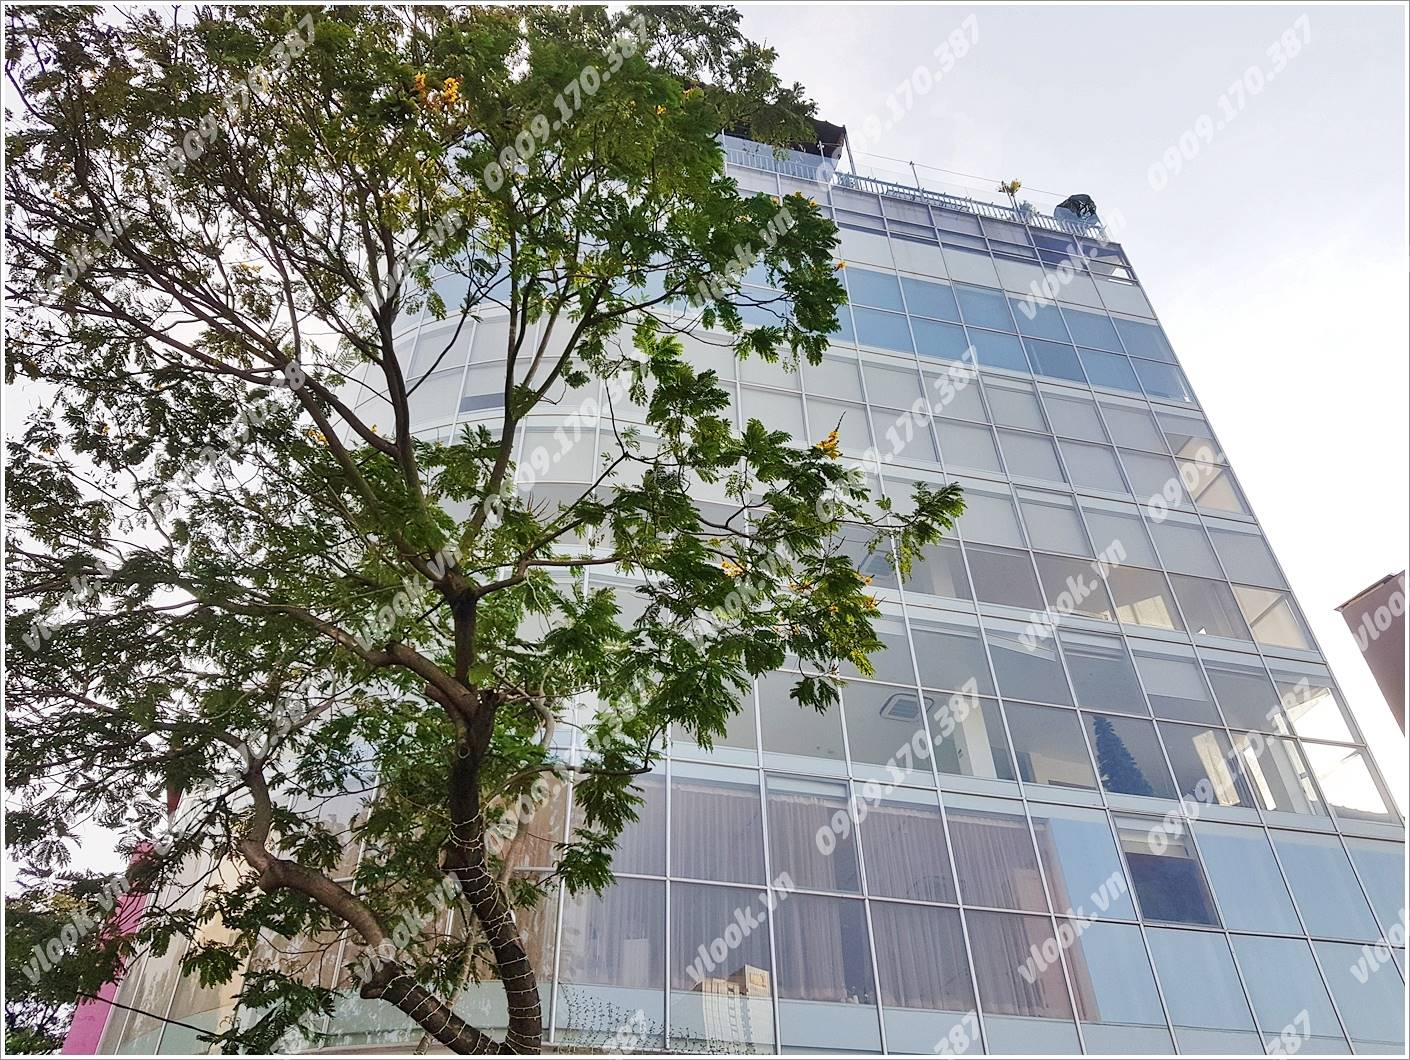 Cao ốc văn phòng cho thuê Building 82, Lê Thị Hồng Gấm, Quận 1, TPHCM - vlook.vn